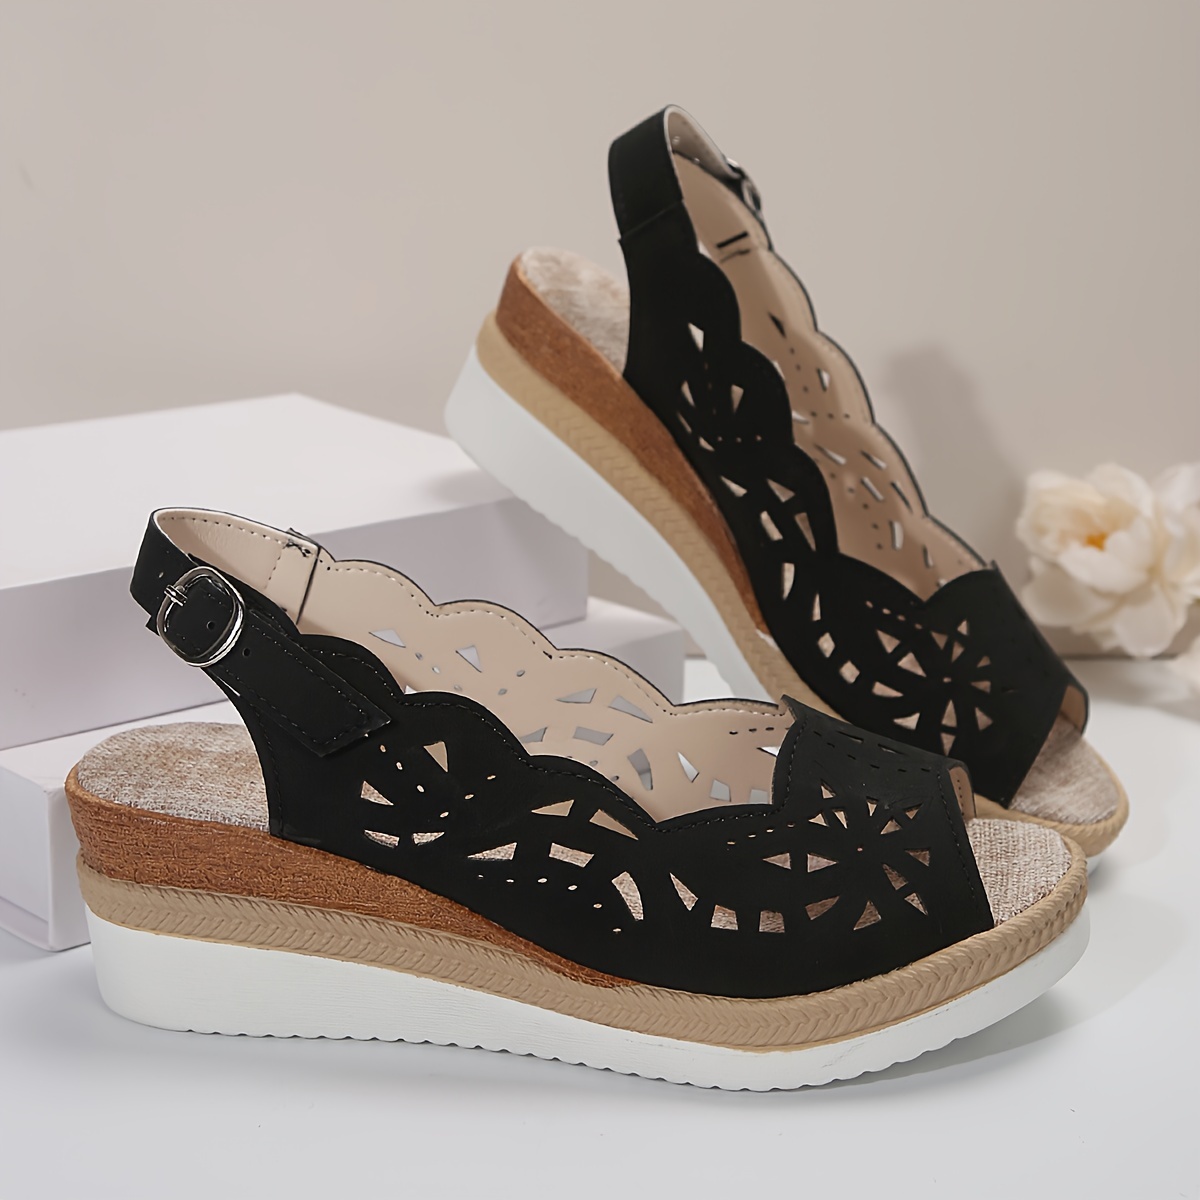 floral hollow sandals women s ankle buckle strap platform detalles 6